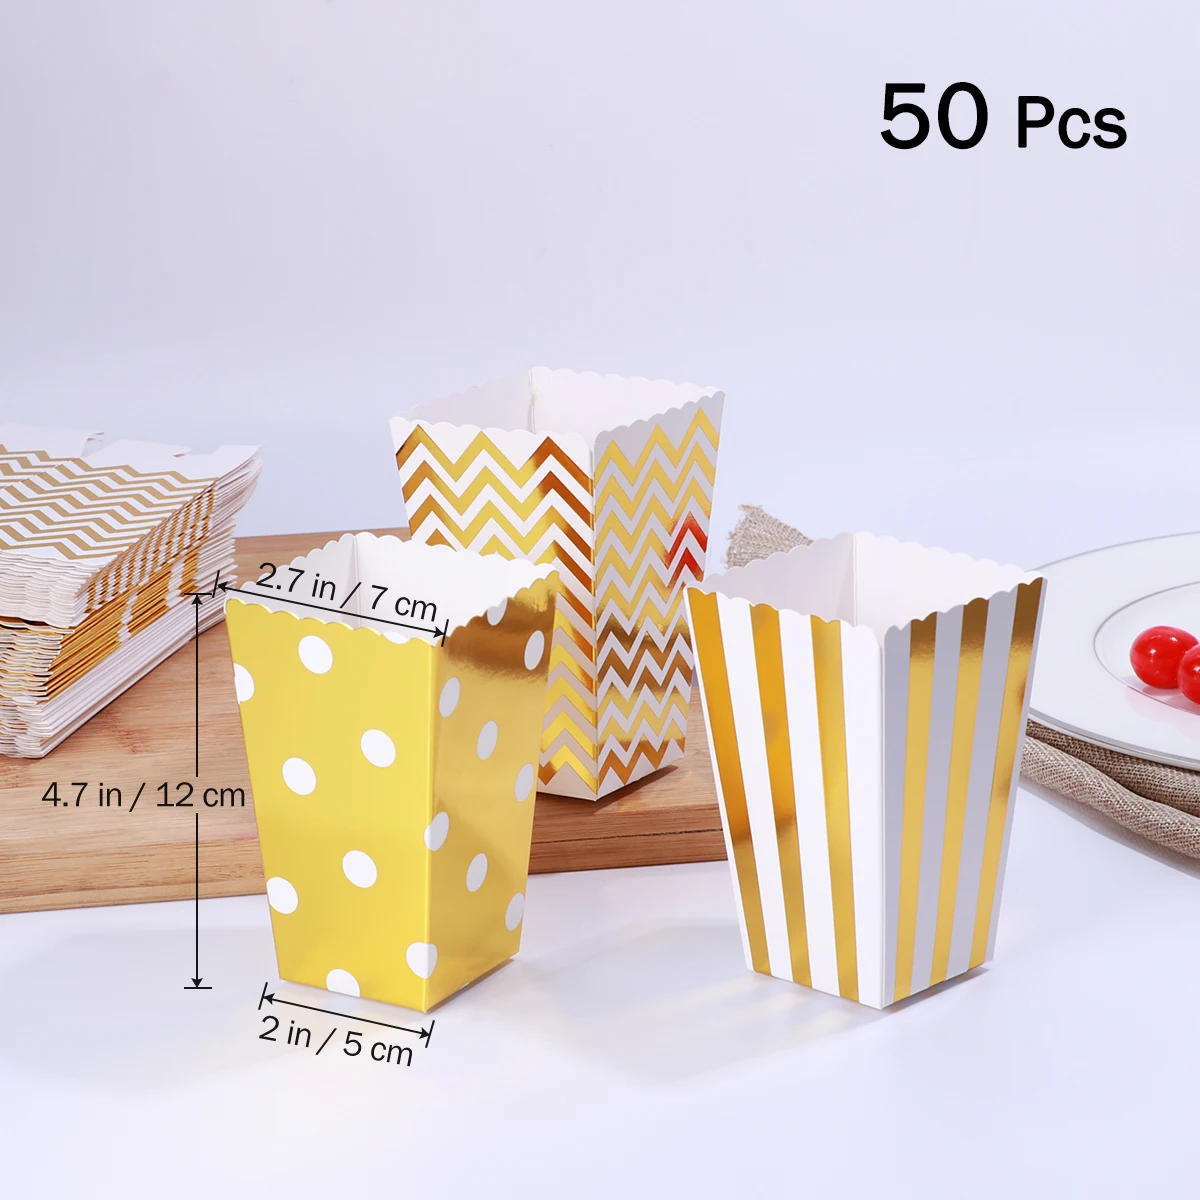 50 шт. Бумага коробки для попкорна сумки картона для приготовления попкорна в мешочки, принадлежности для праздника снэк-Еда воздушная Кукуруза коробка конфетная коробка для лечения коробки(золото